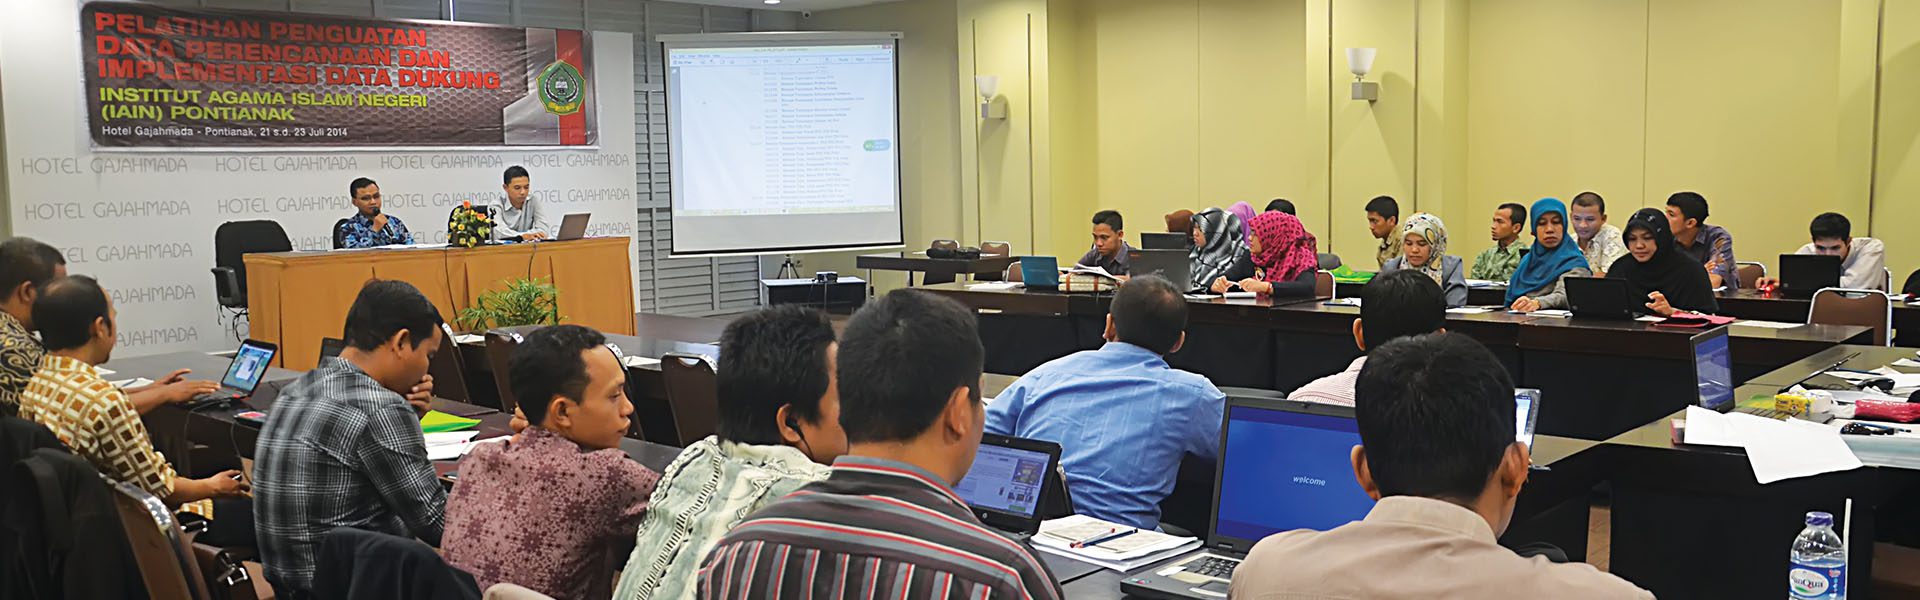 Khalimah: Kebutuhan Perencanaan Anggaran 2015 Didasari pada Aspek Prioritas Utama dan Pendukung